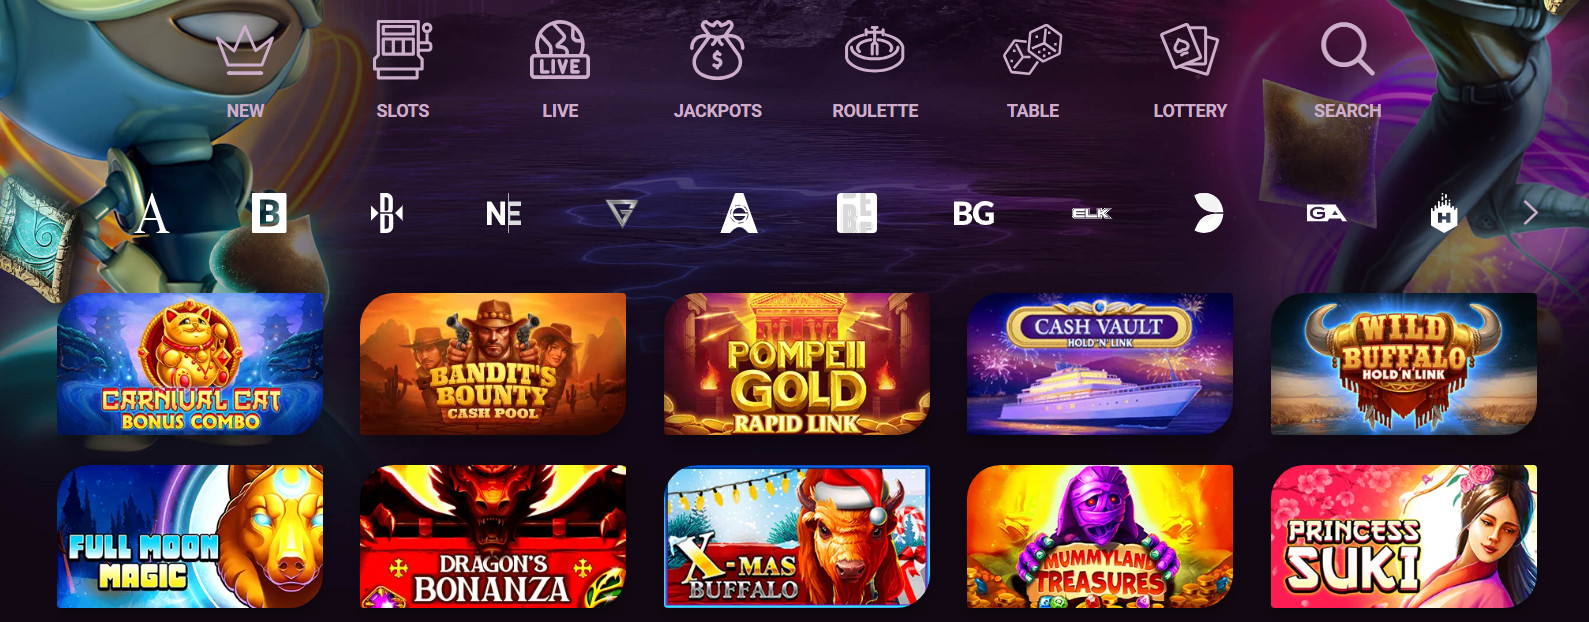 Slots Section at Ricky Casino Screenshot